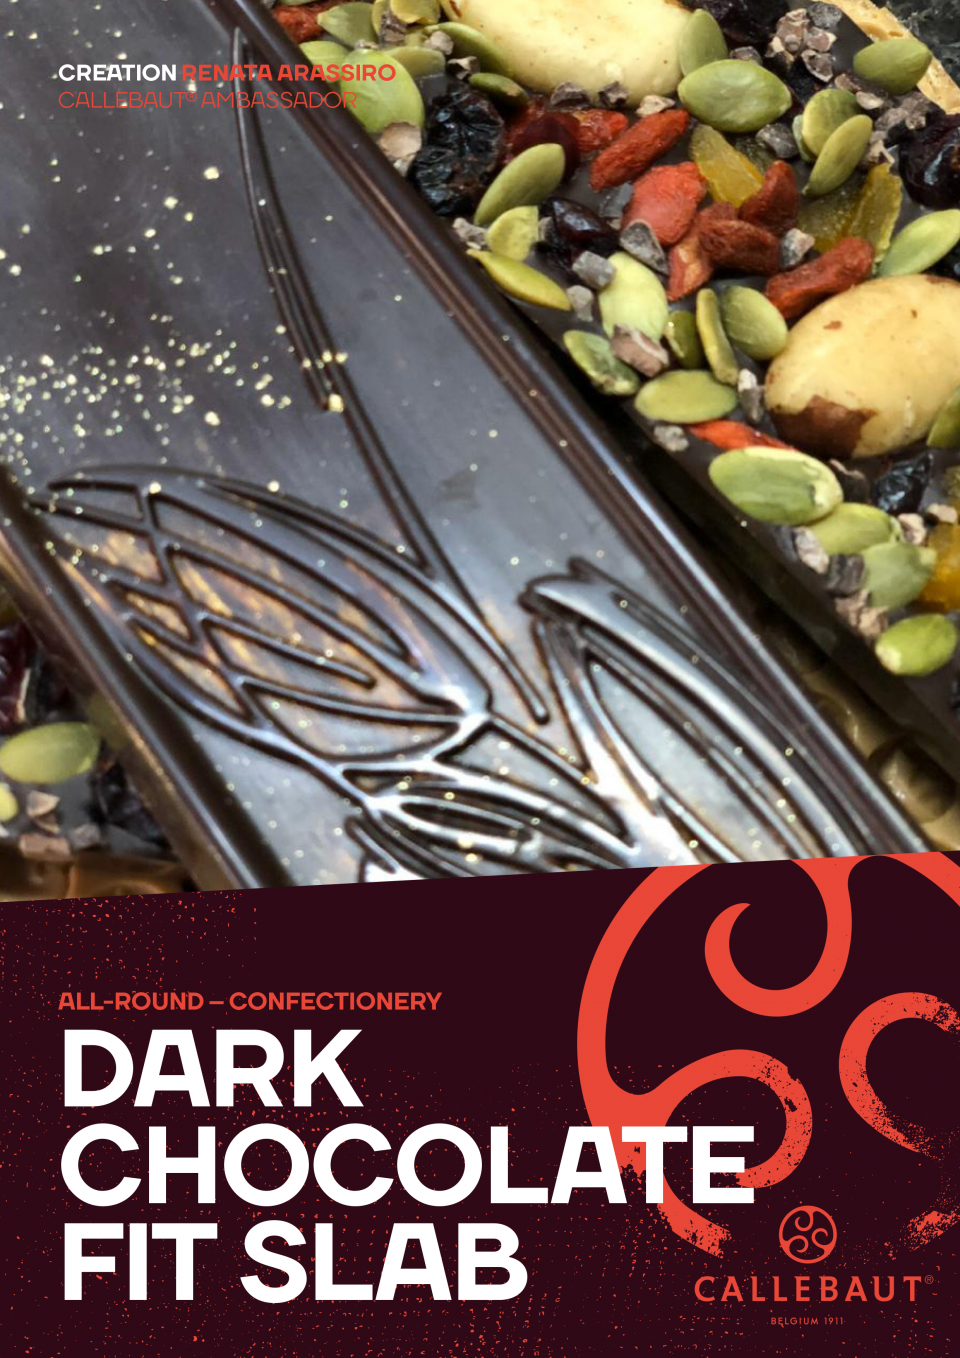 黑巧克力贴身板砖 下载此食谱为一个黑暗的巧克力FIT板。